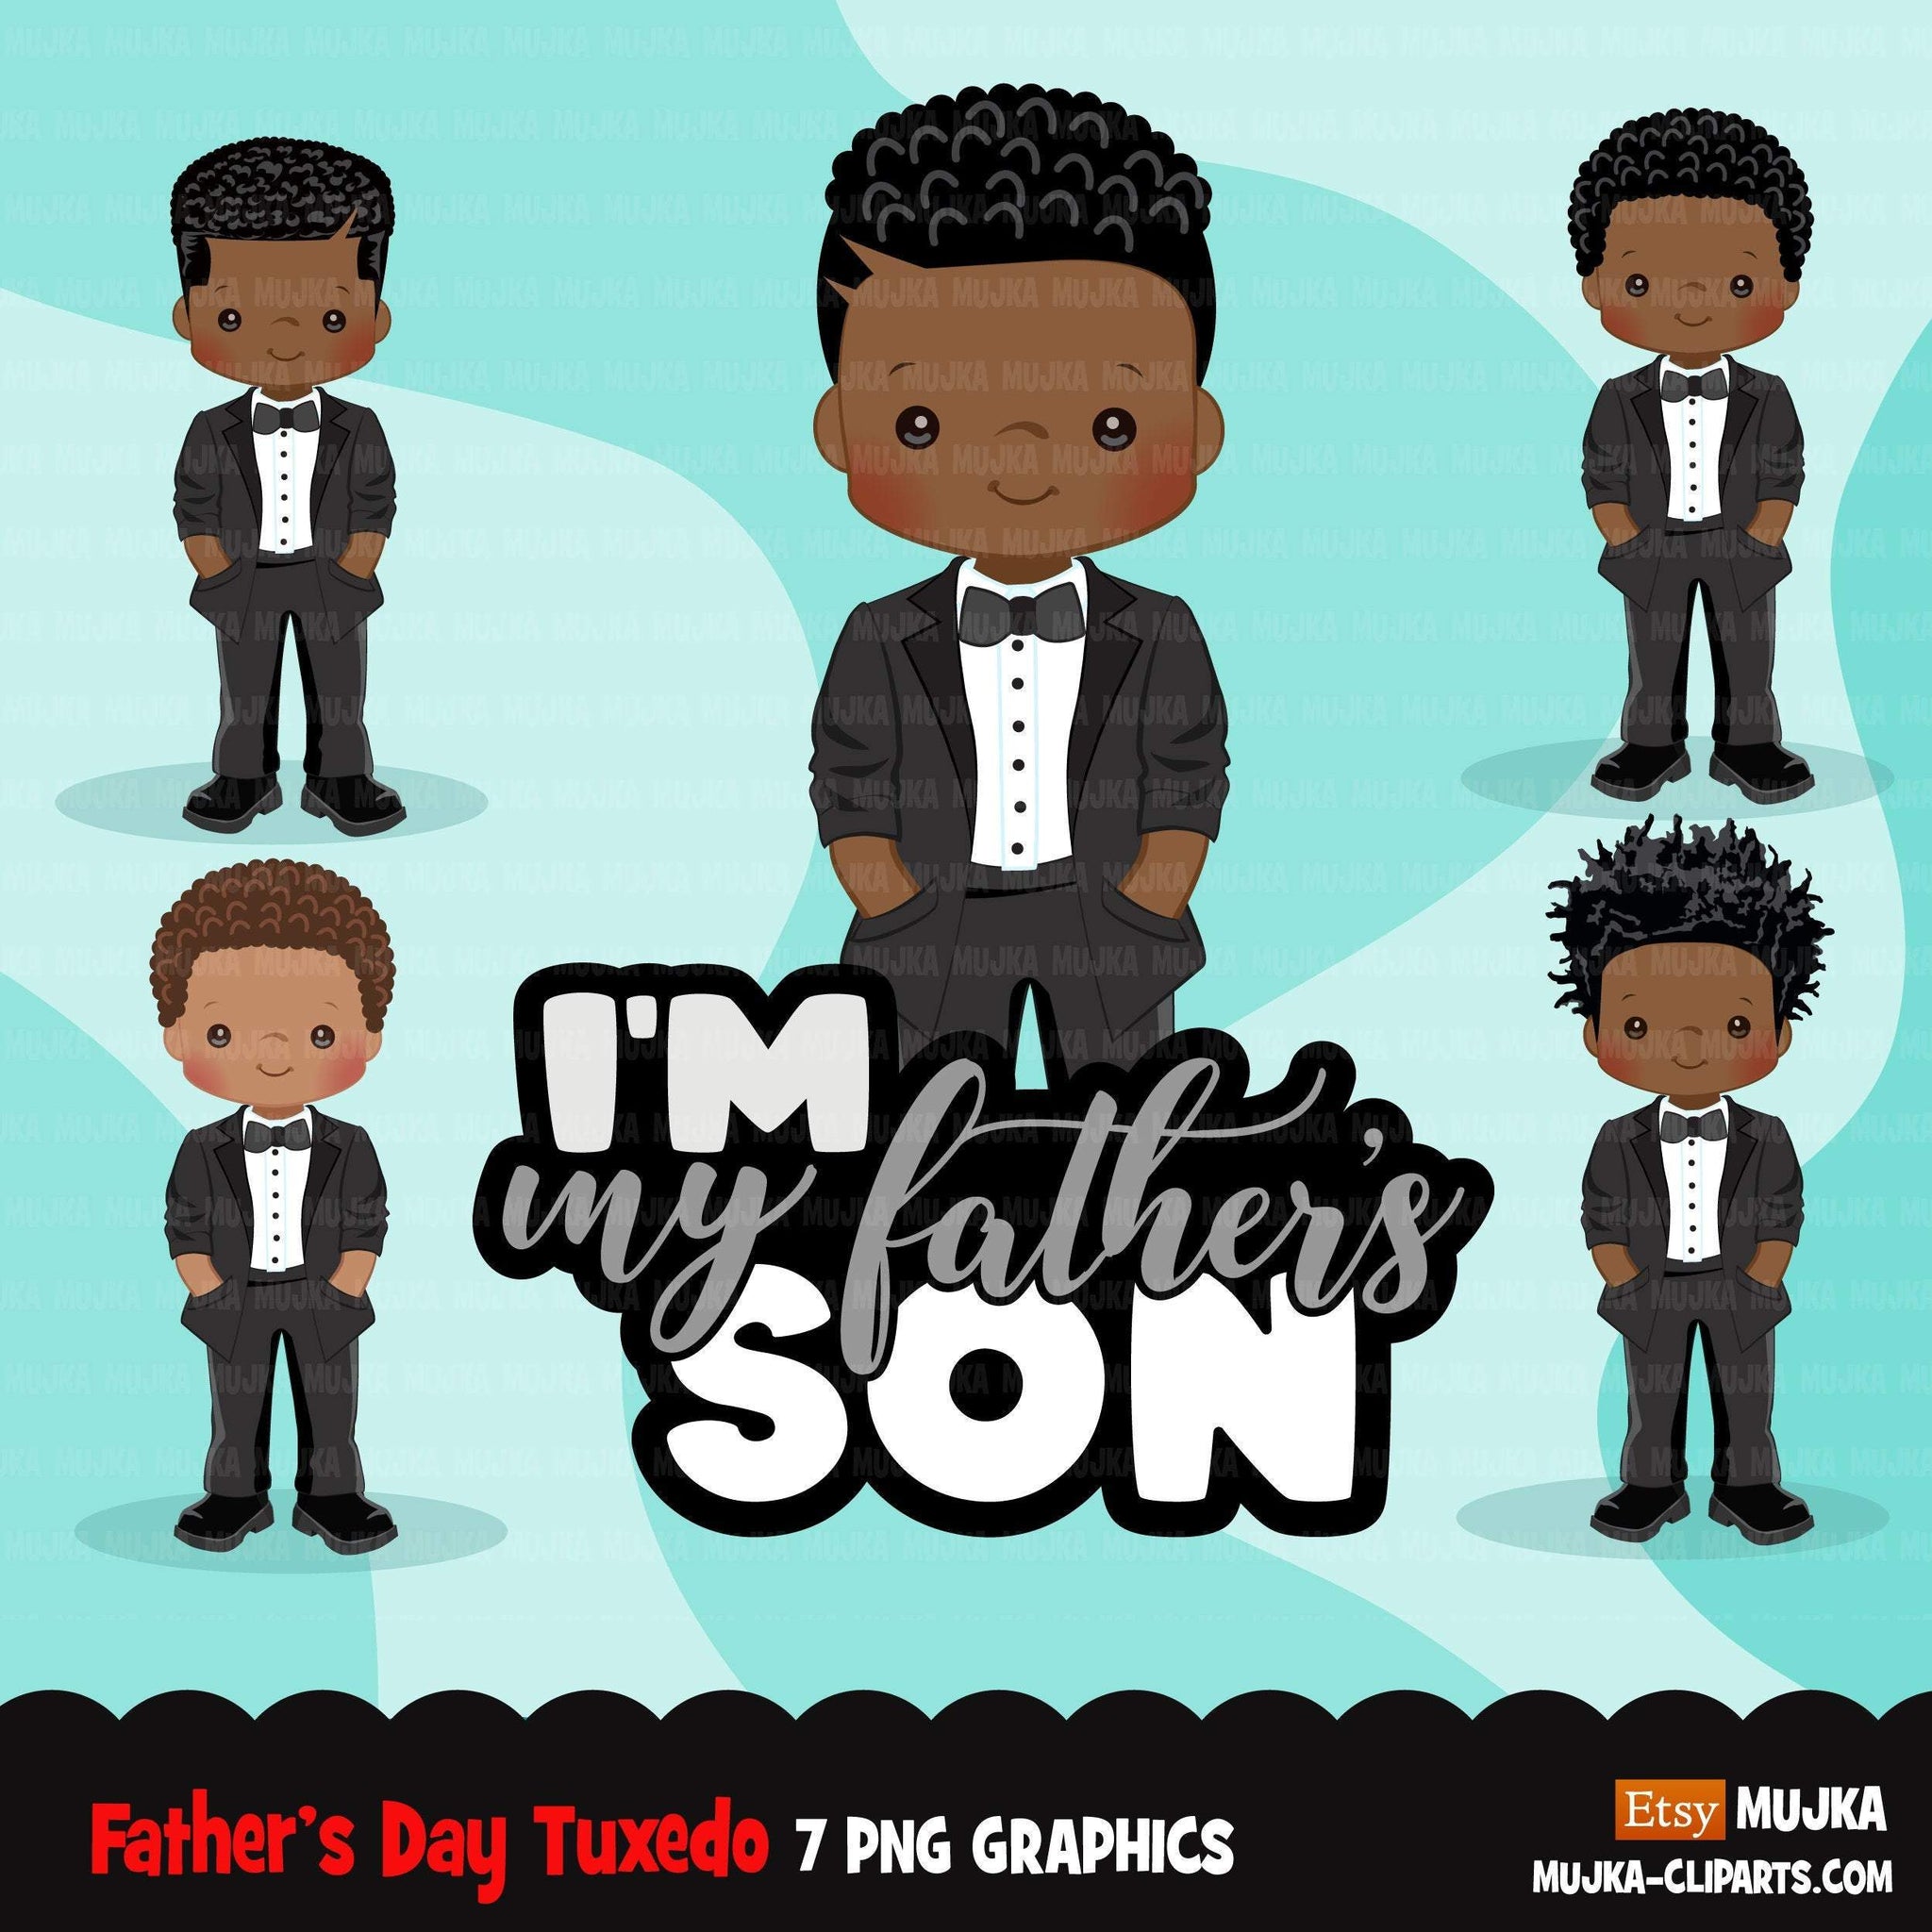 Clipart do Dia dos Pais, menino negro com smoking, citação de filho do meu pai, gráficos do pai, uso comercial PNG clip art